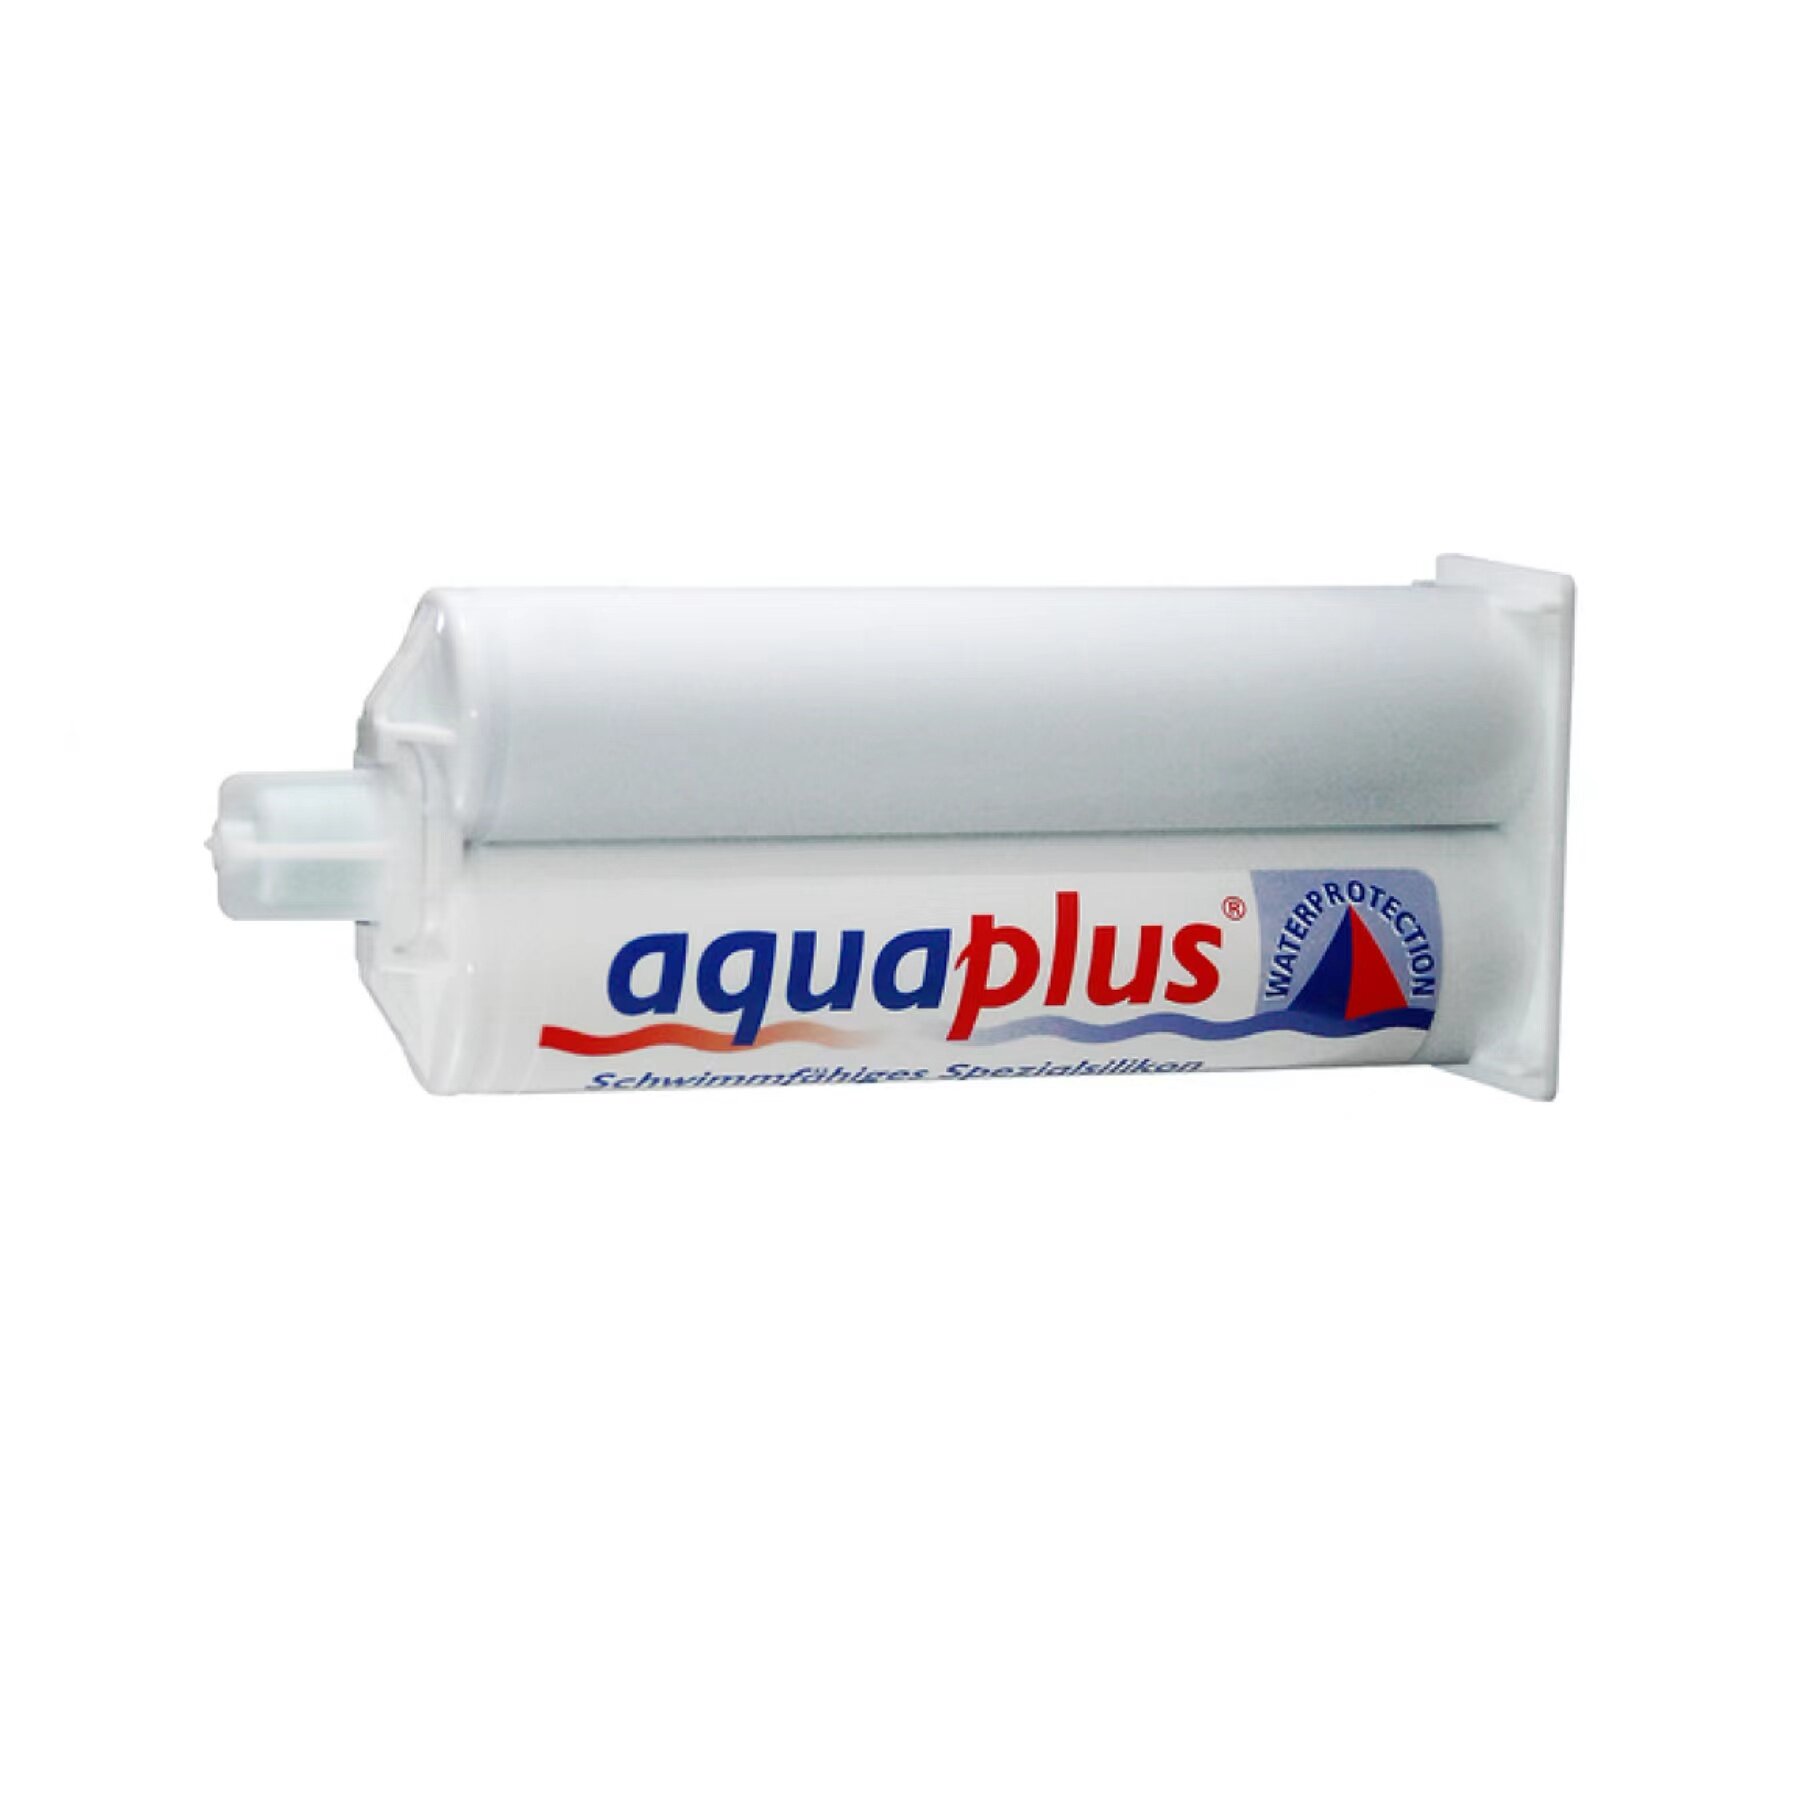 Detax Aquaplus Silicone Material For Swimming Plugs